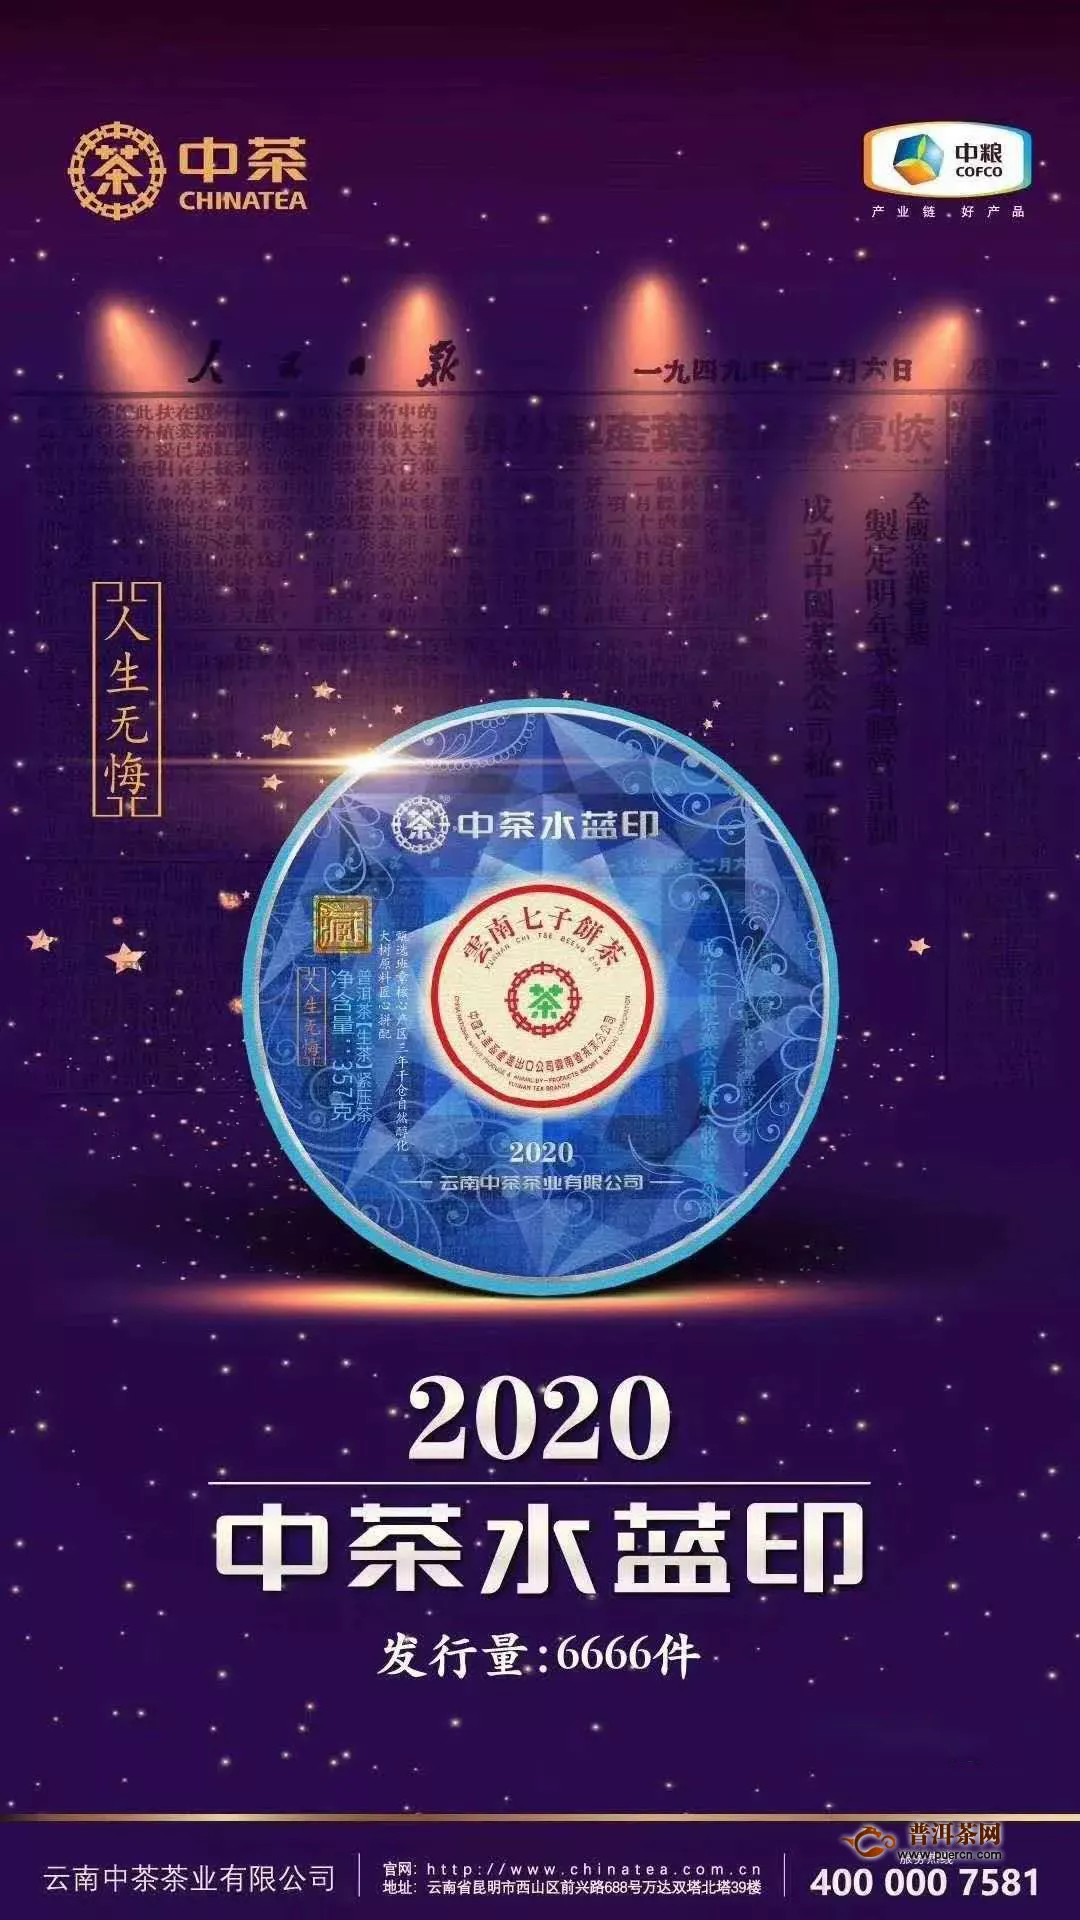 聚光灯下的“金融茶”2020中茶宝石蓝班章水蓝印